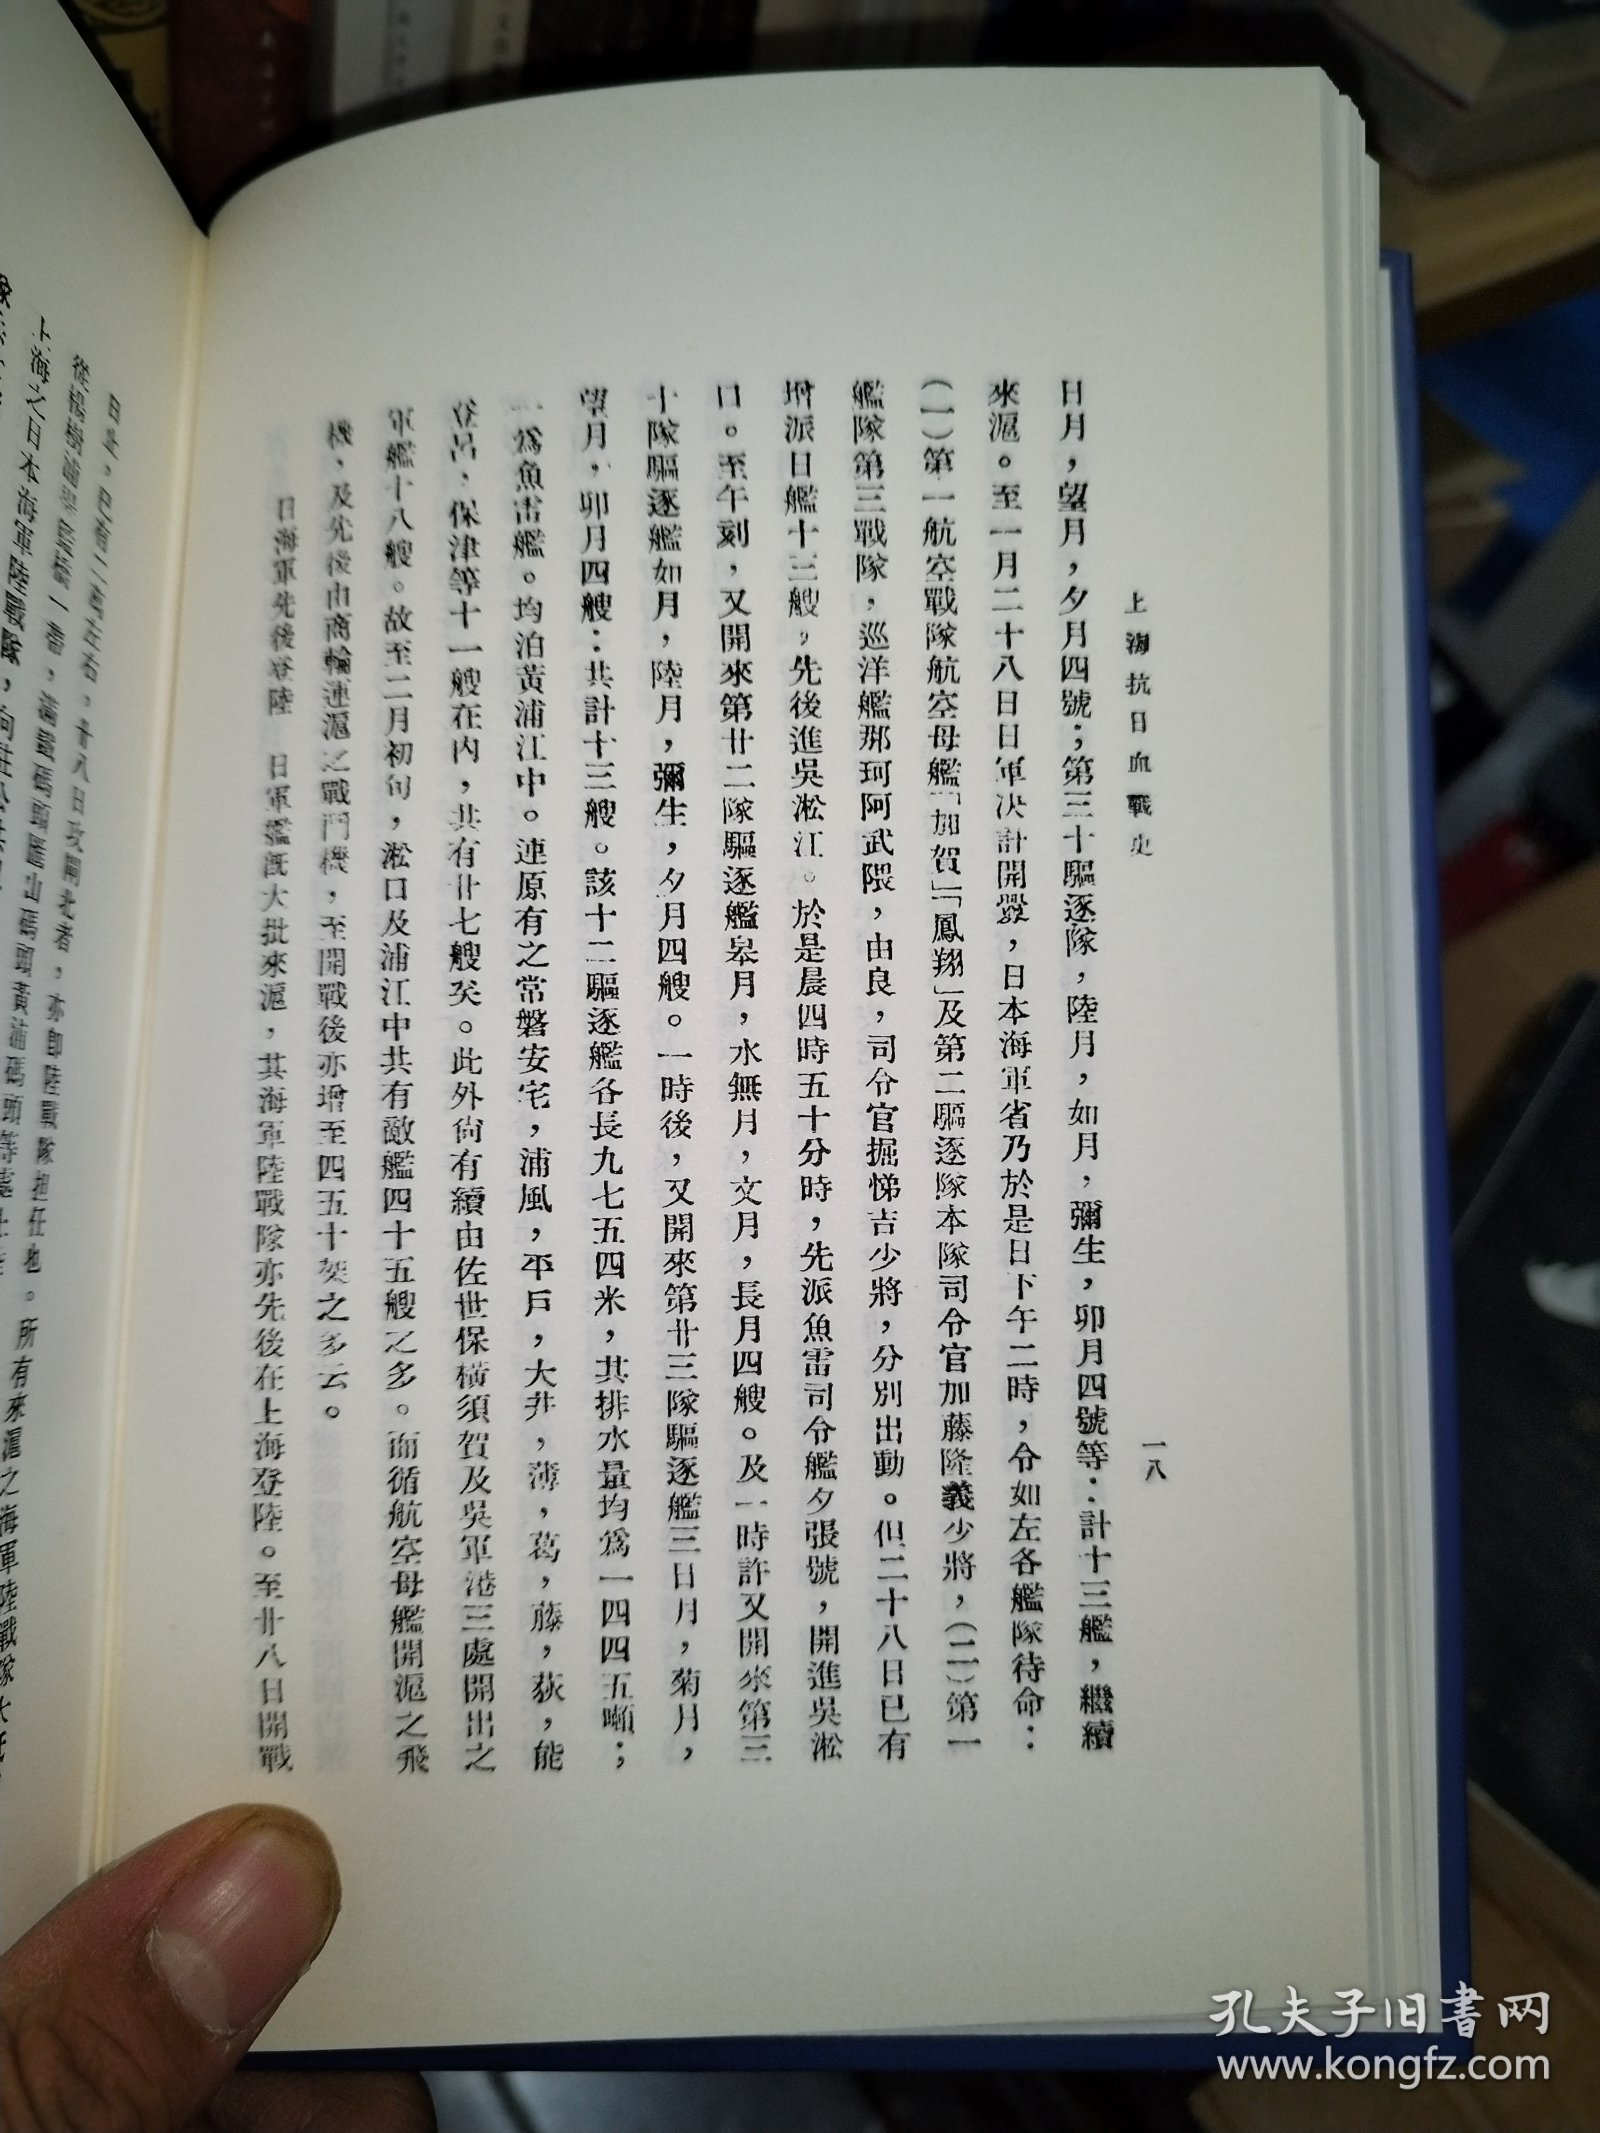 淞沪抗战史料丛书第一辑：上海抗日血战史